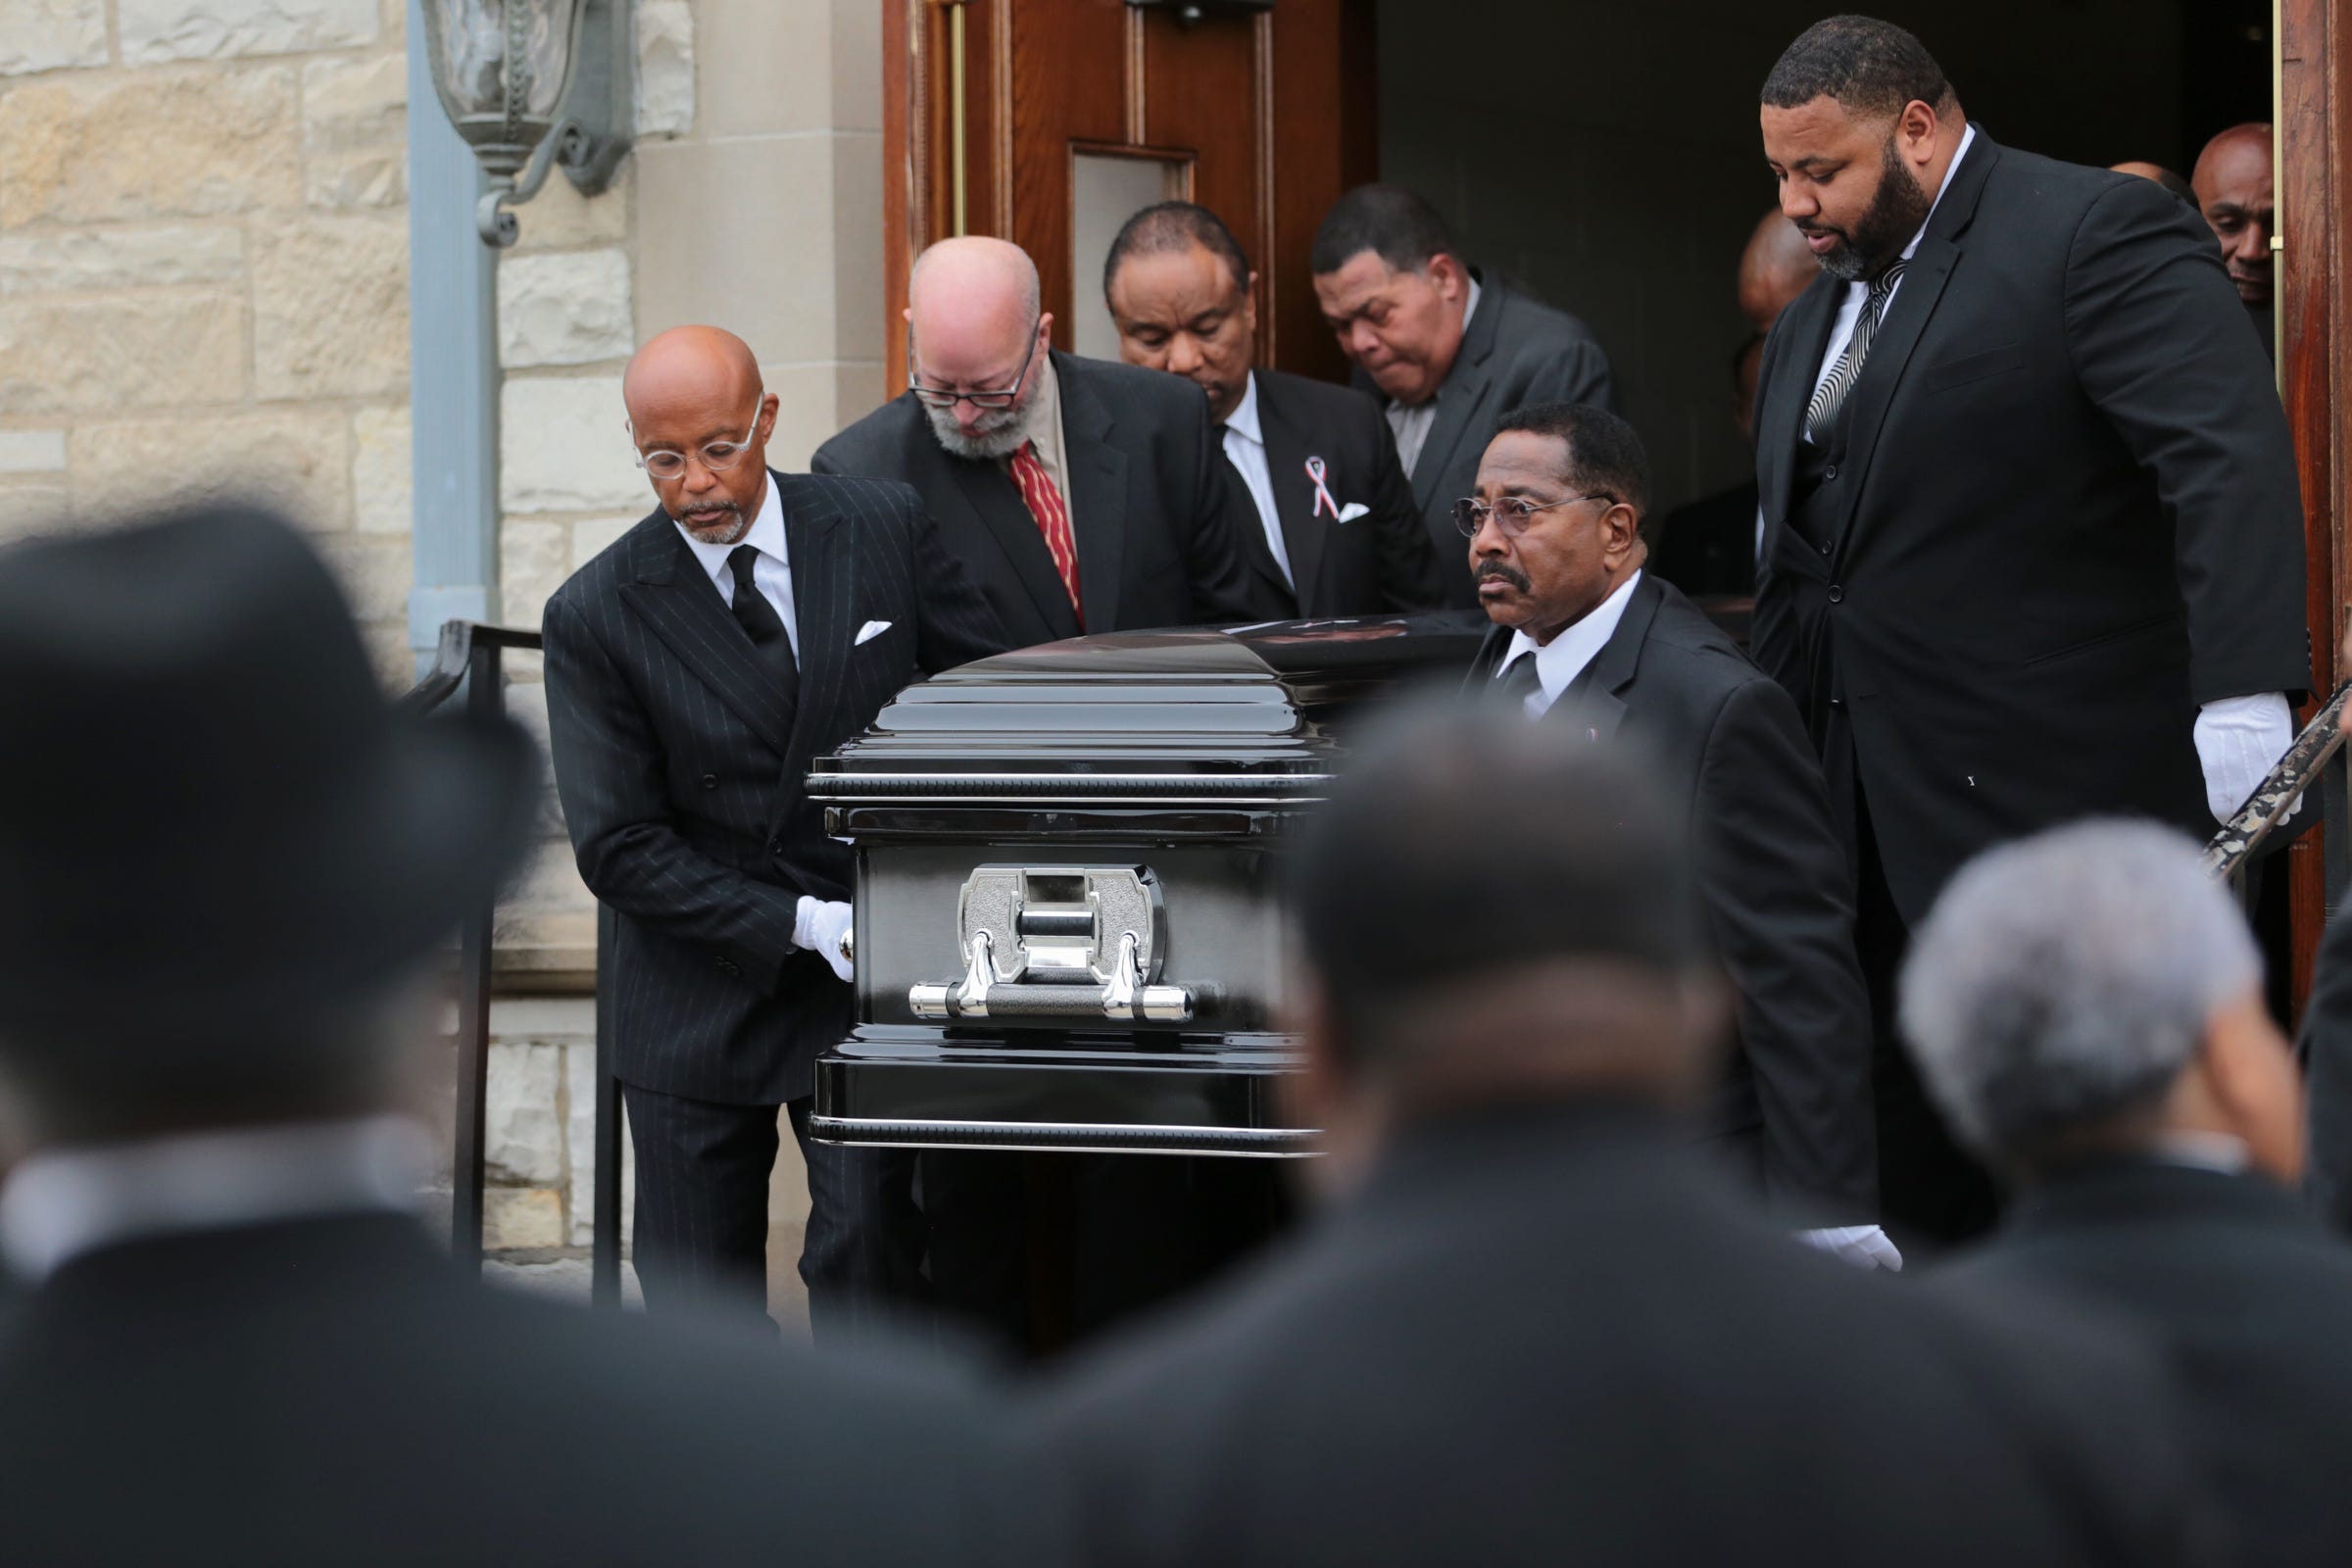 Judge Damon J. Keith funeral: Hartford Memorial fills for farewell